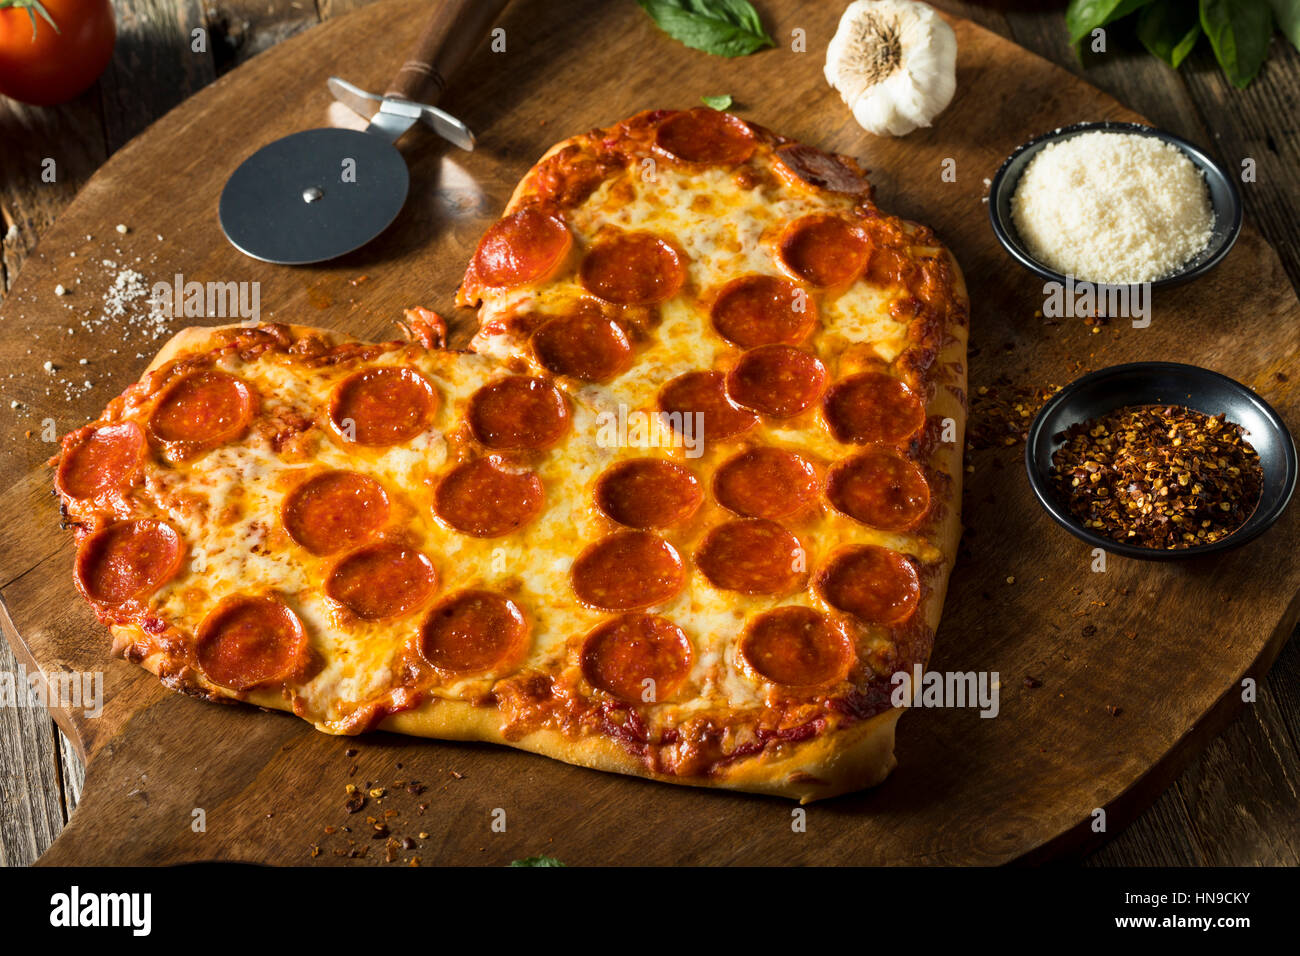 En forme de coeur fait maison prêt à manger de la Pizza au Pepperoni Banque D'Images